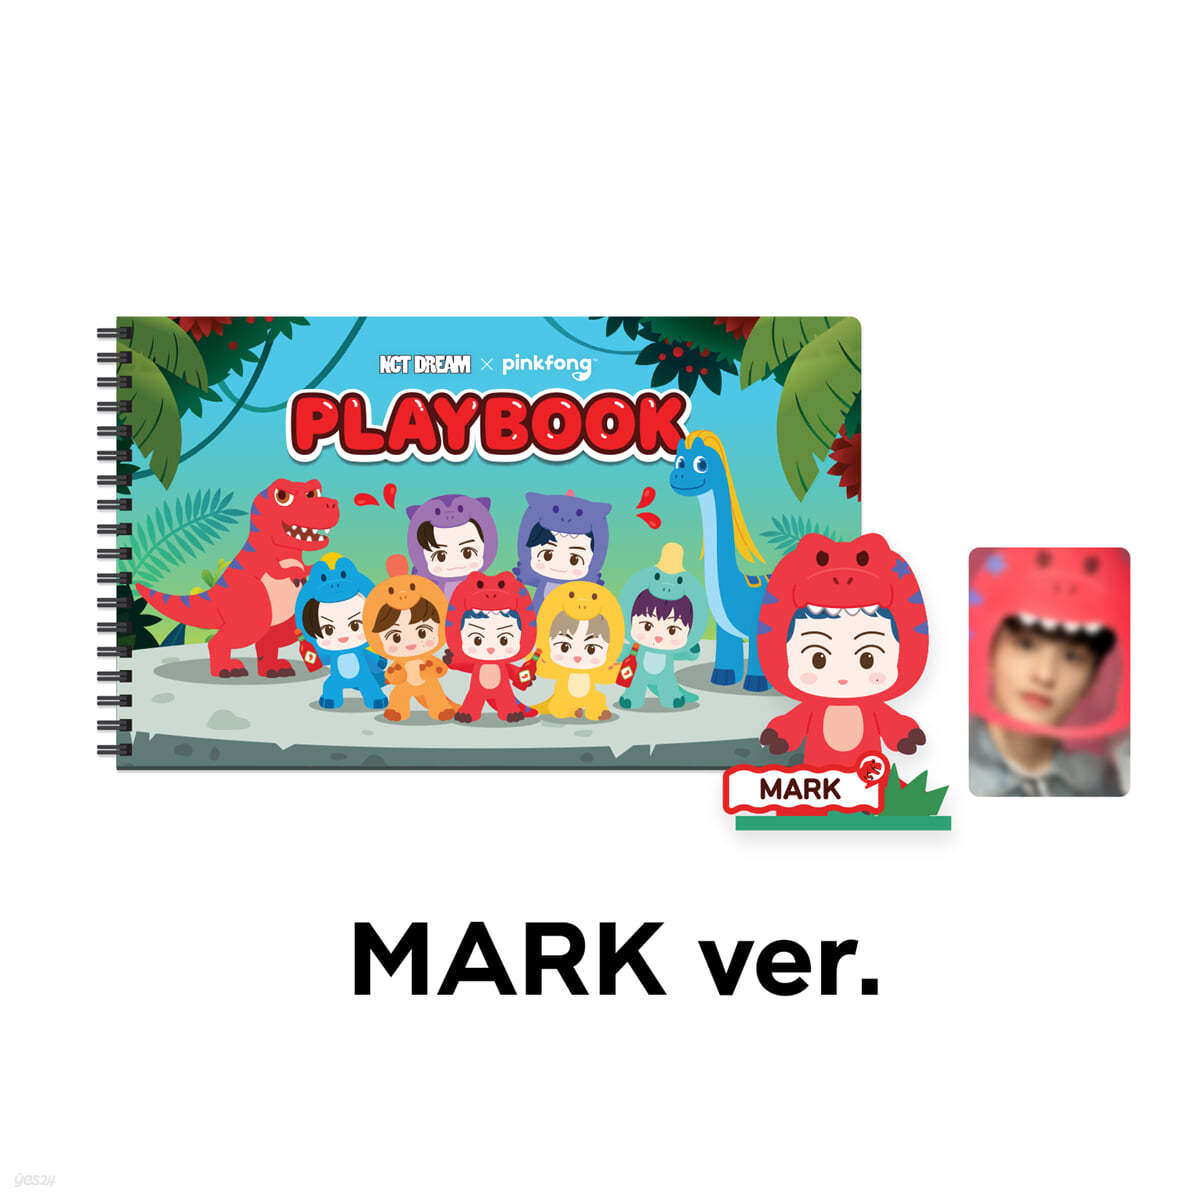 [MARK] PLAYBOOK SET - NCT DREAM X PINKFONG